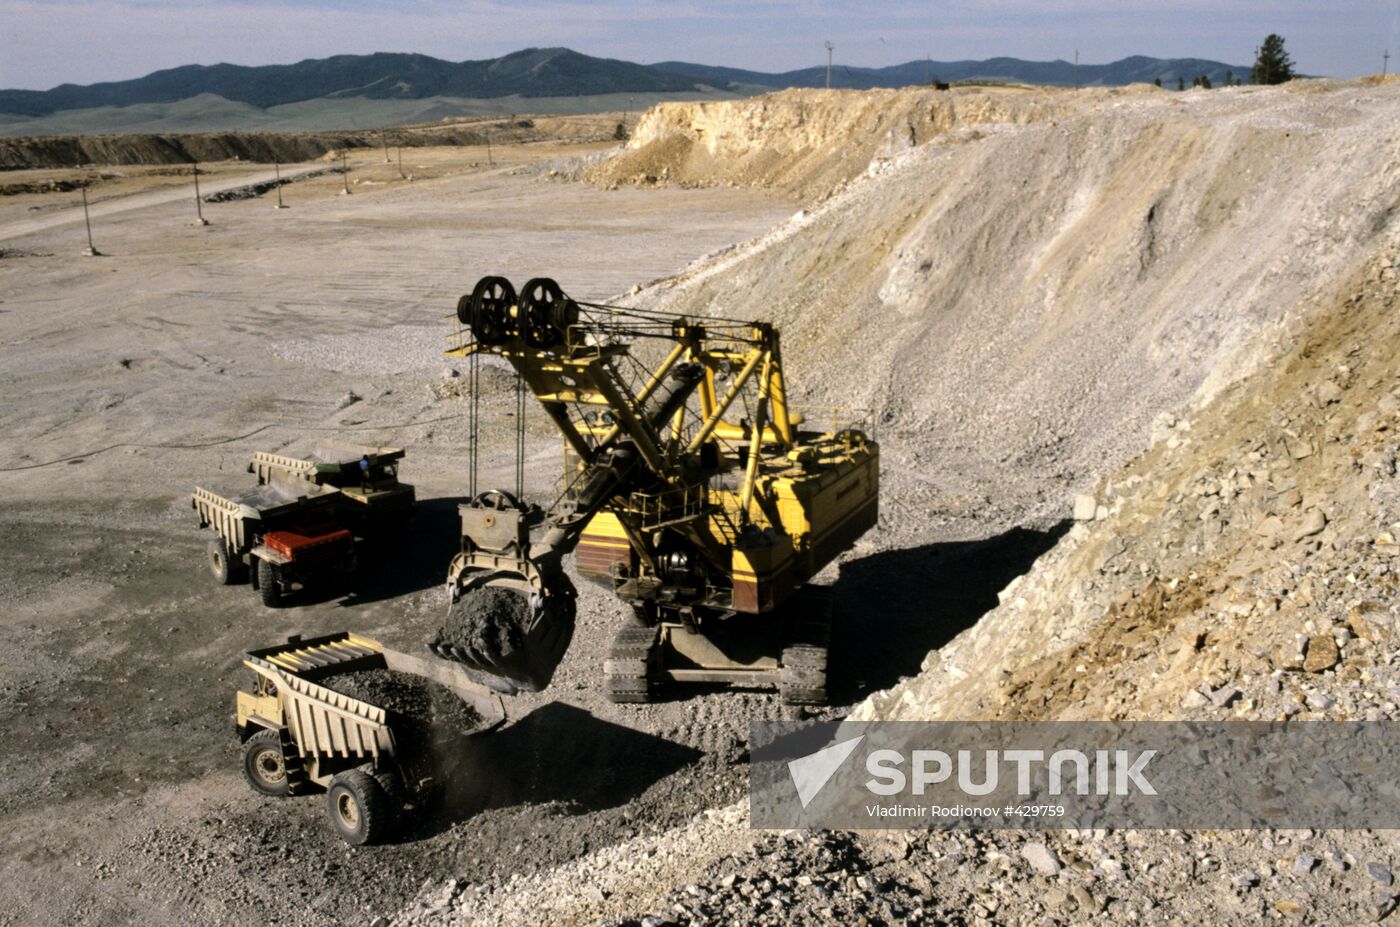 Mine of copper-molybdenum combine in Erdenete